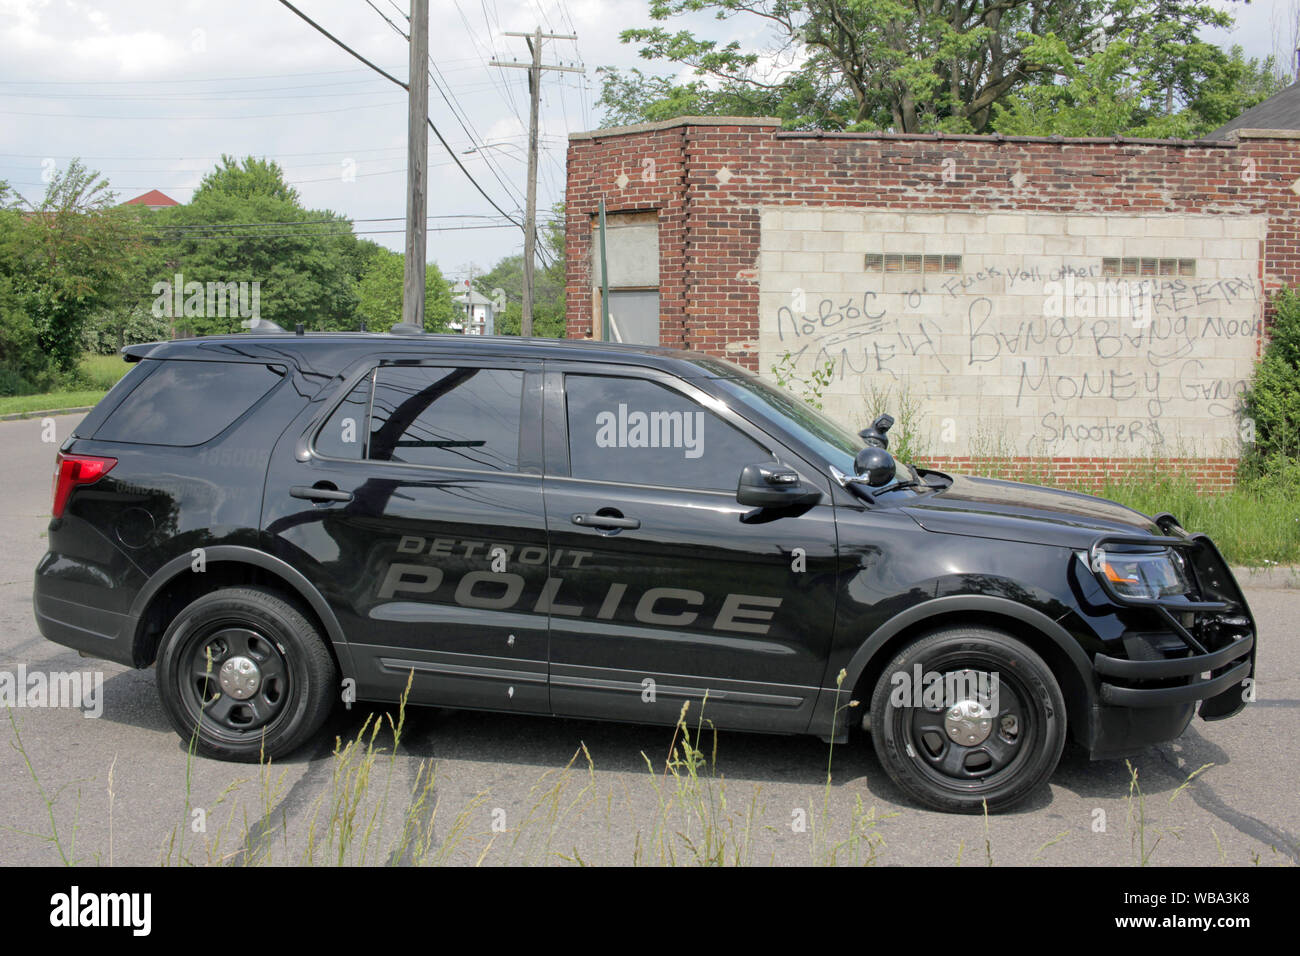 La Detroit del Dipartimento di Polizia di pista esecuzione veicolo da una parete ricoperta in pista graffiti, Detroit, Michigan, Stati Uniti d'America Foto Stock